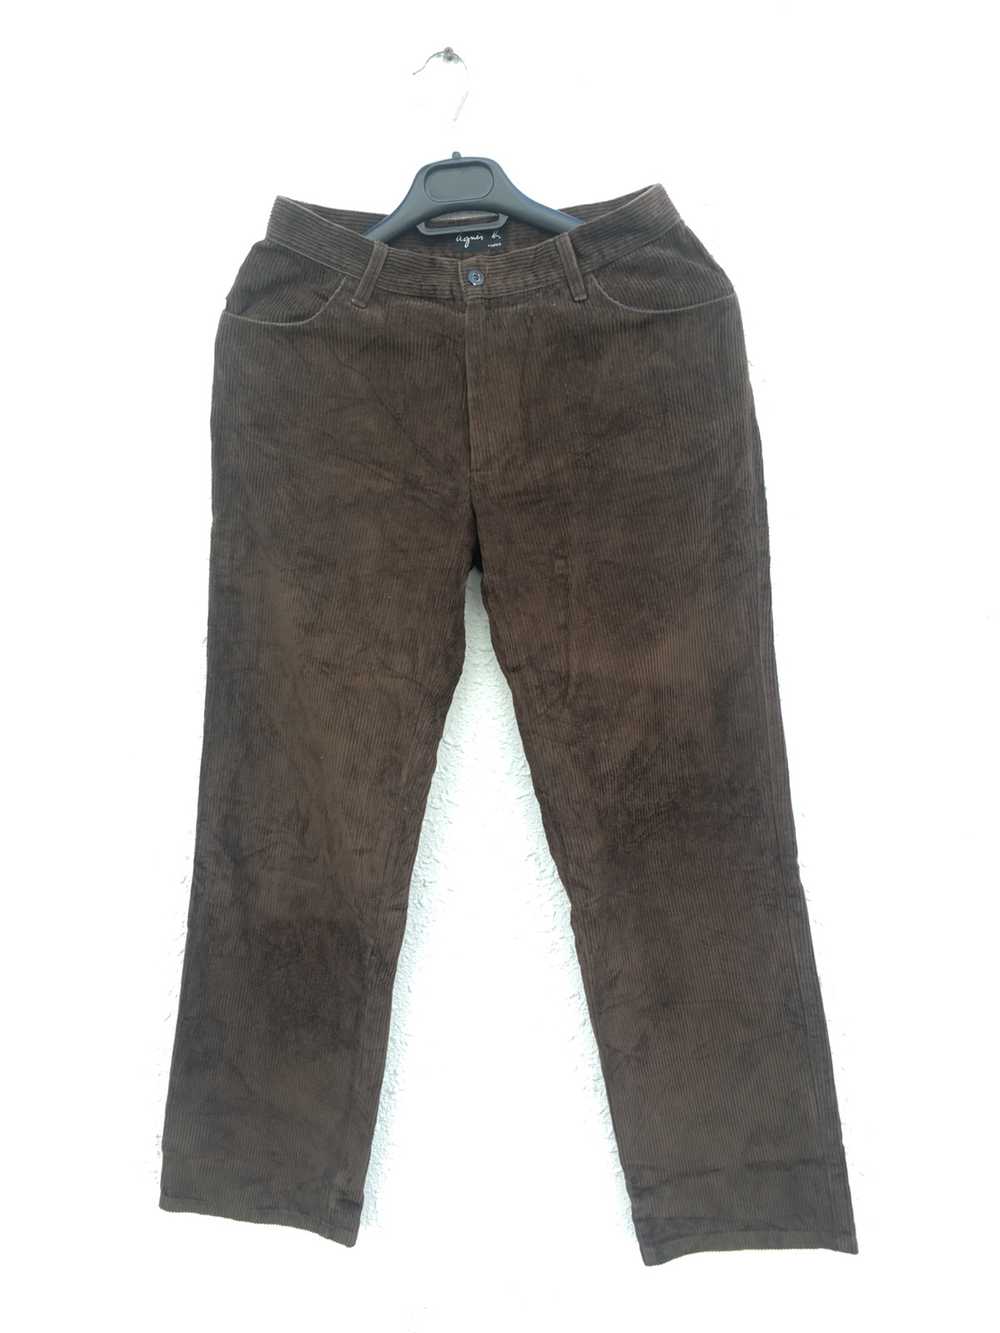 Agnes B. - ( 2pcs ) Black Jeans / Brown Cotton Co… - image 10